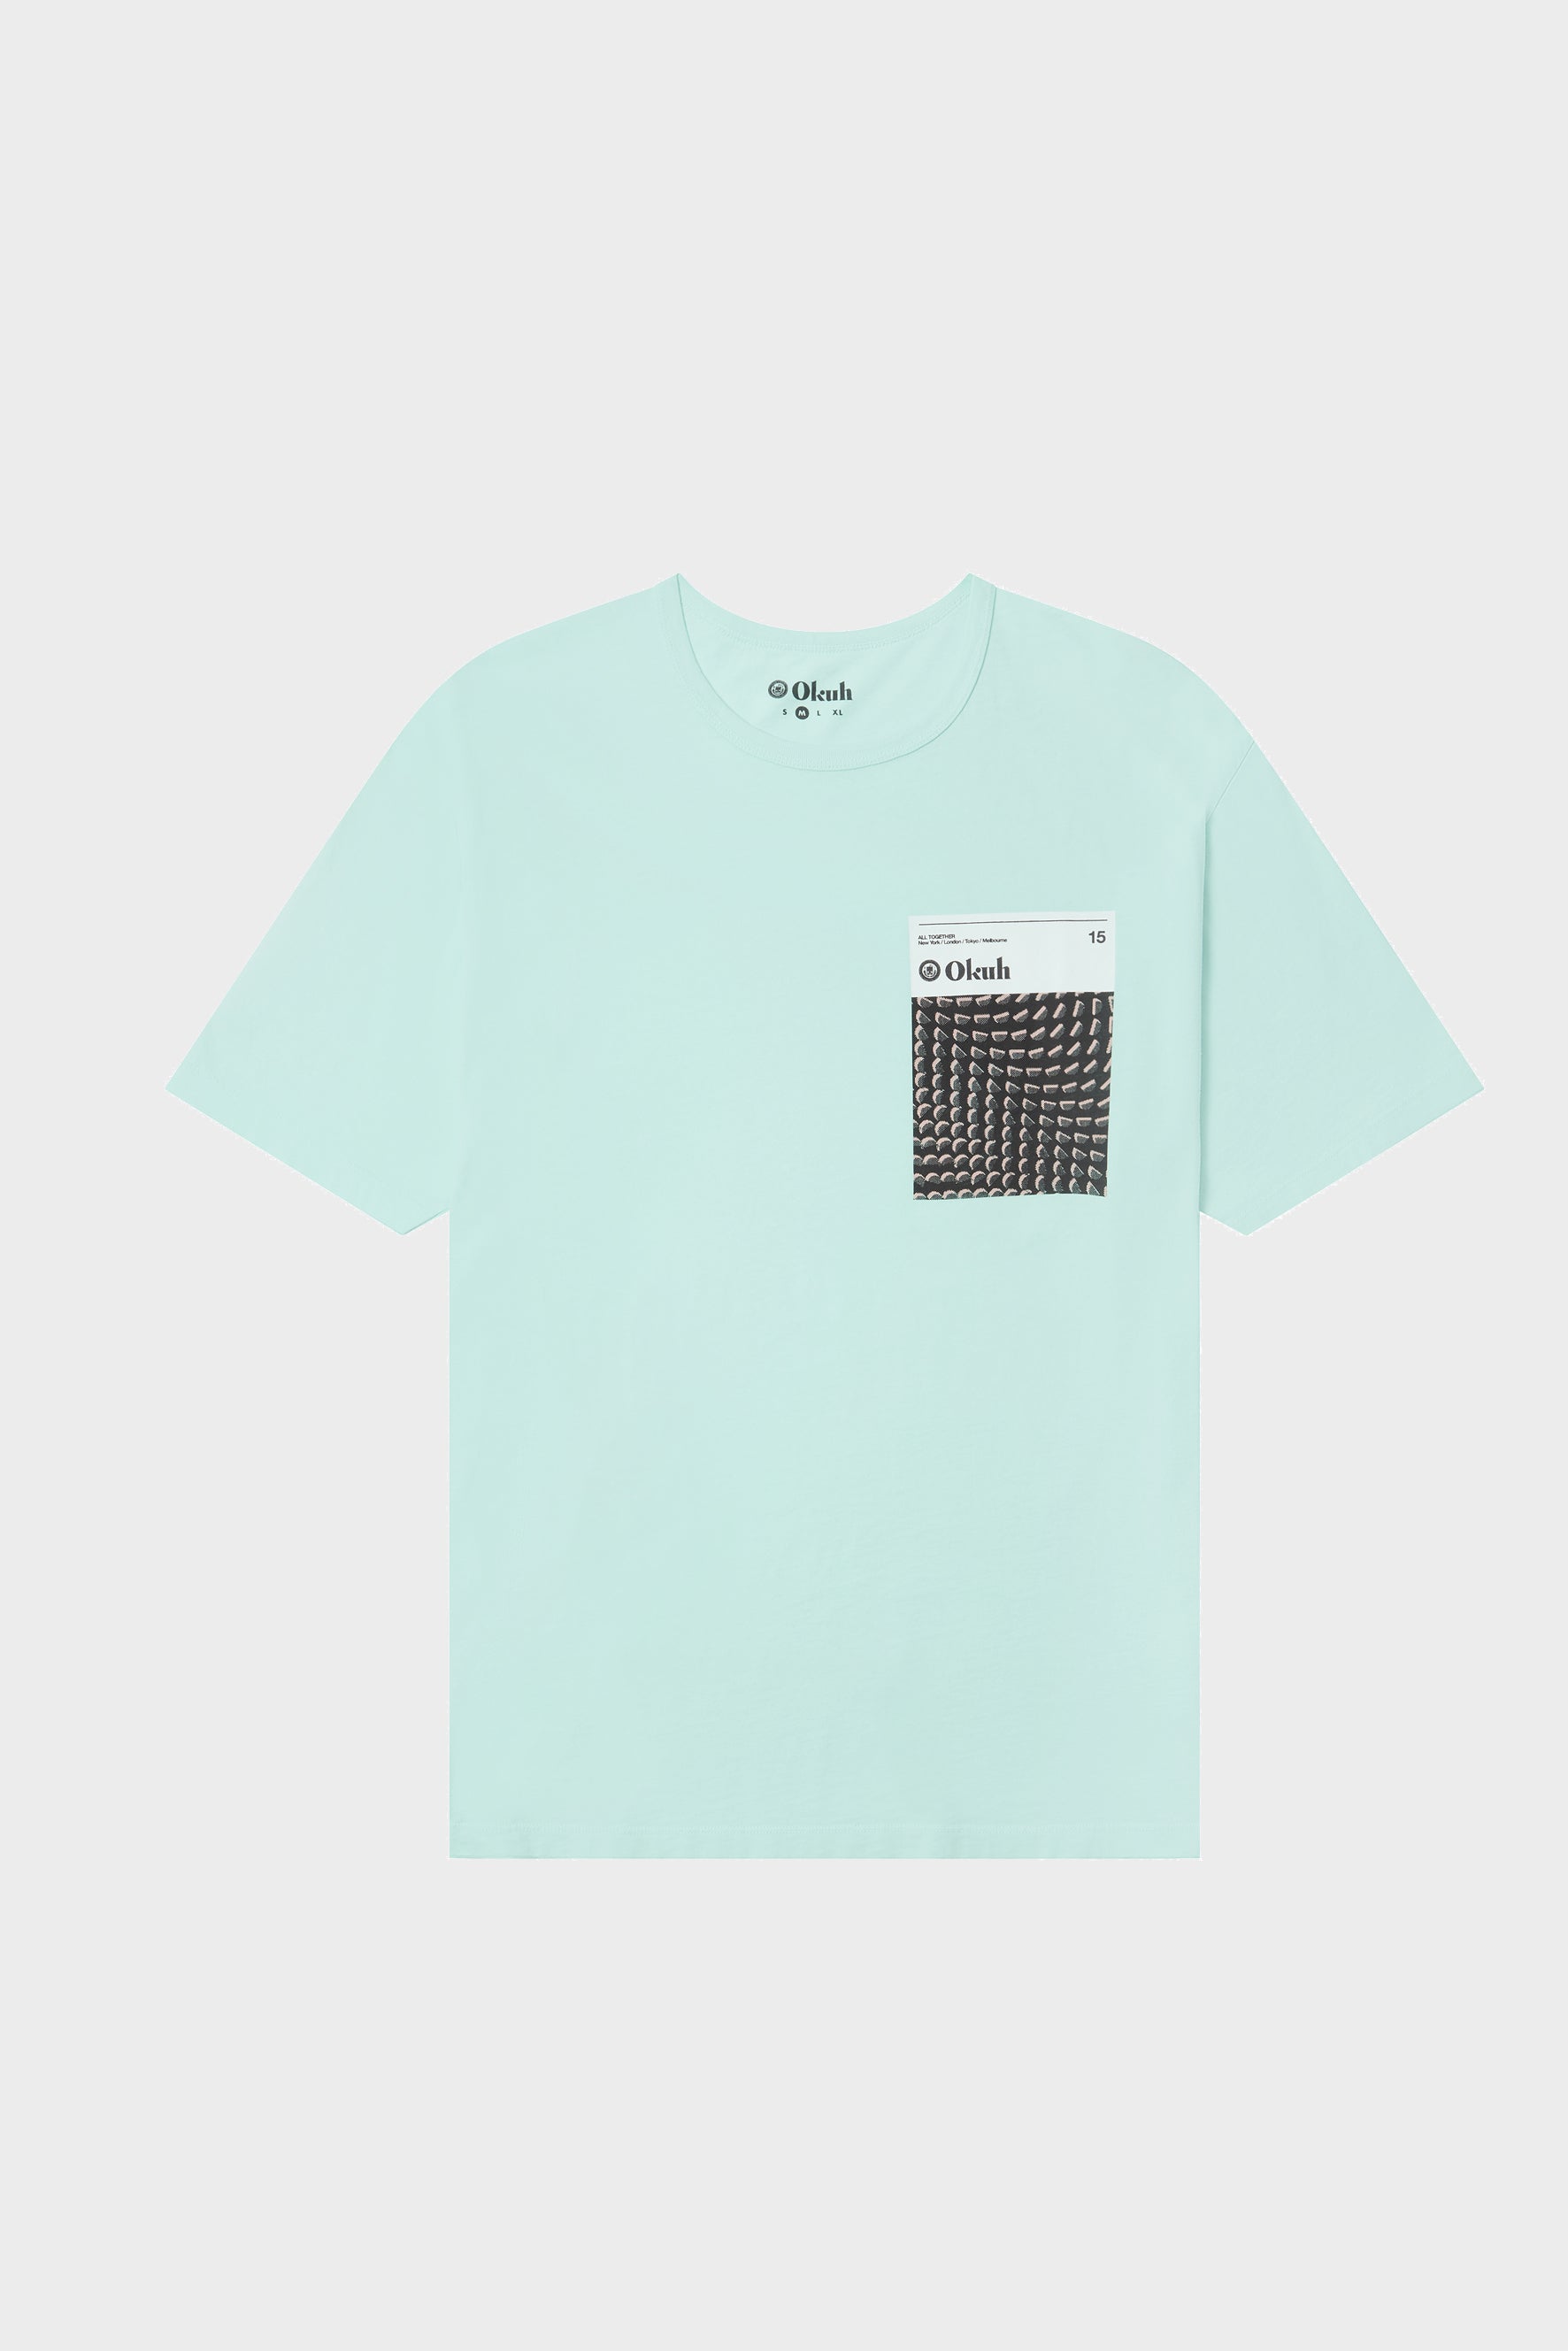 Navato - Aqua T-Shirt